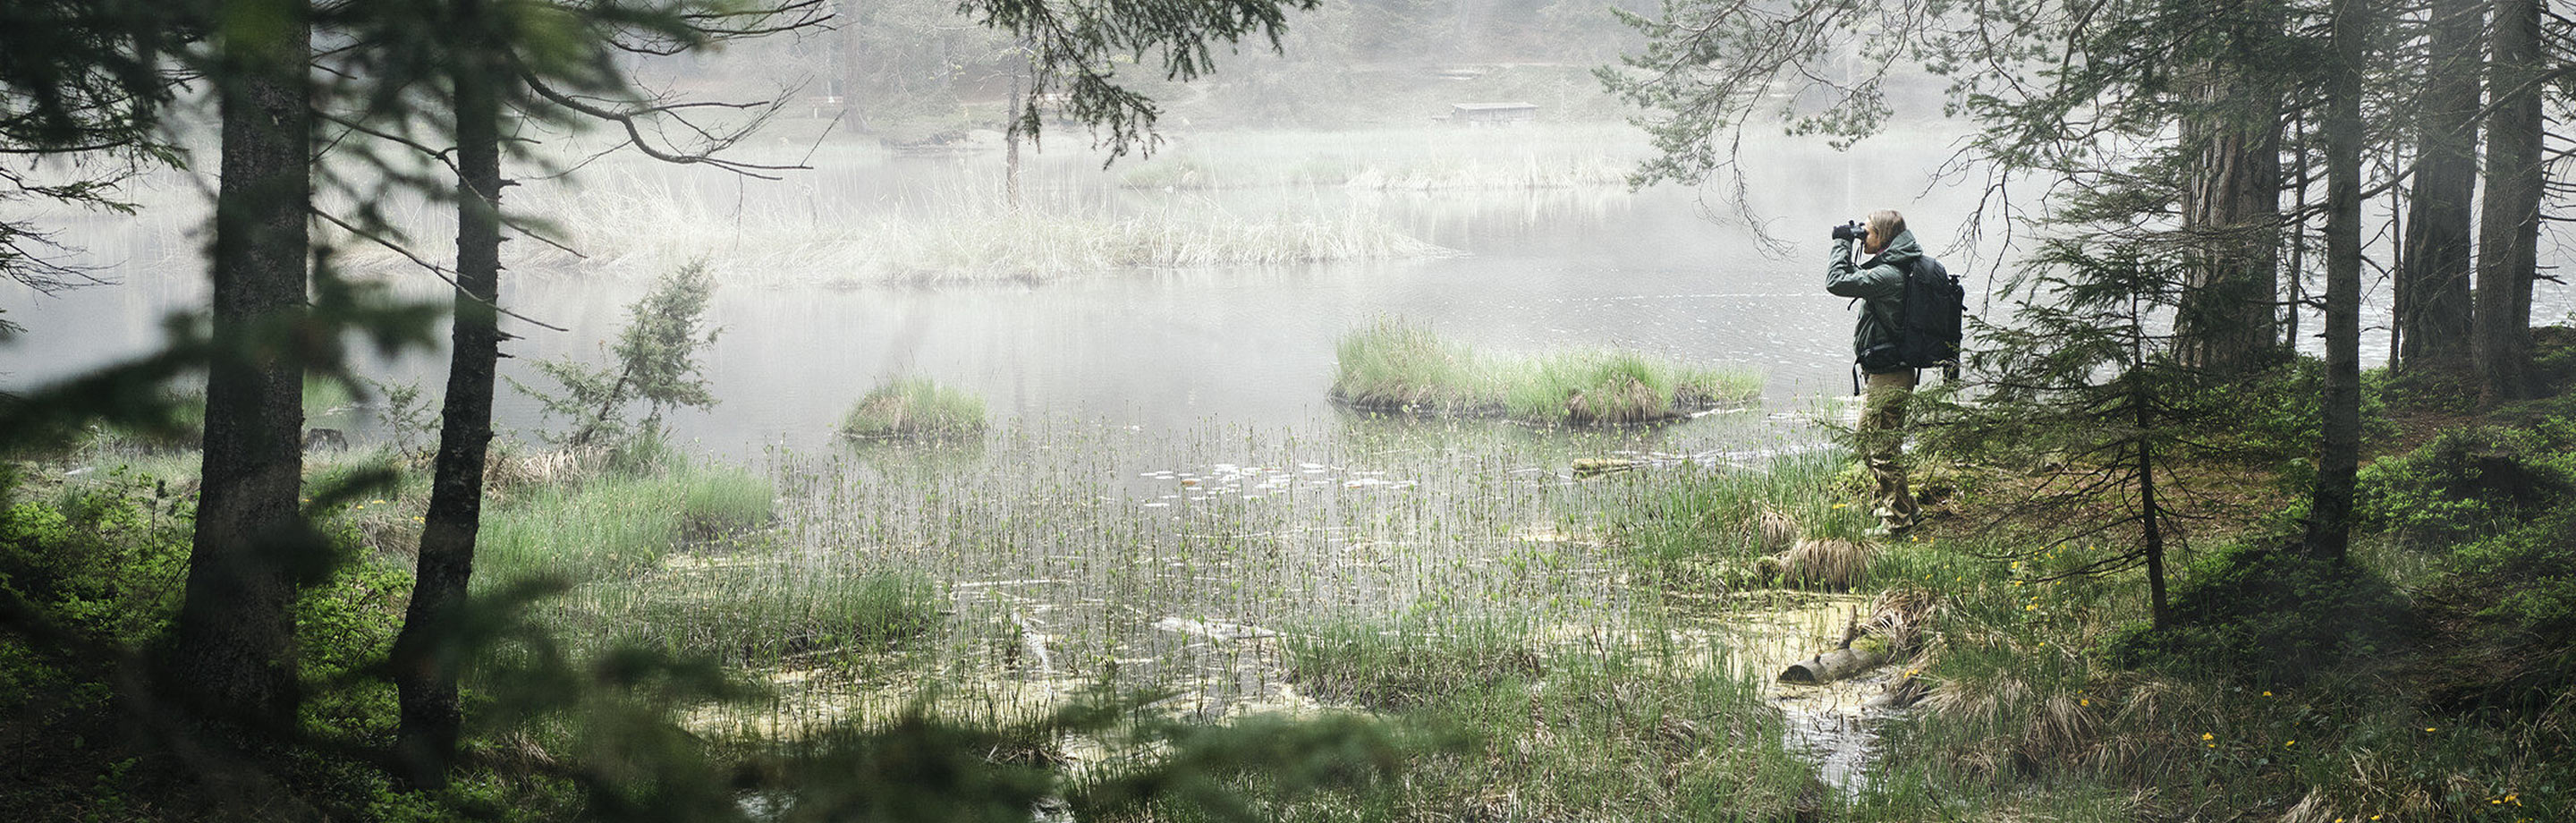 Eine nebelverhangene Landschaft am Rande eines Waldes mit pflanzenbedecktem See. Am Ufer steht ein Naturbeobachter mit Rucksack und blickt durch ein Fernglas.